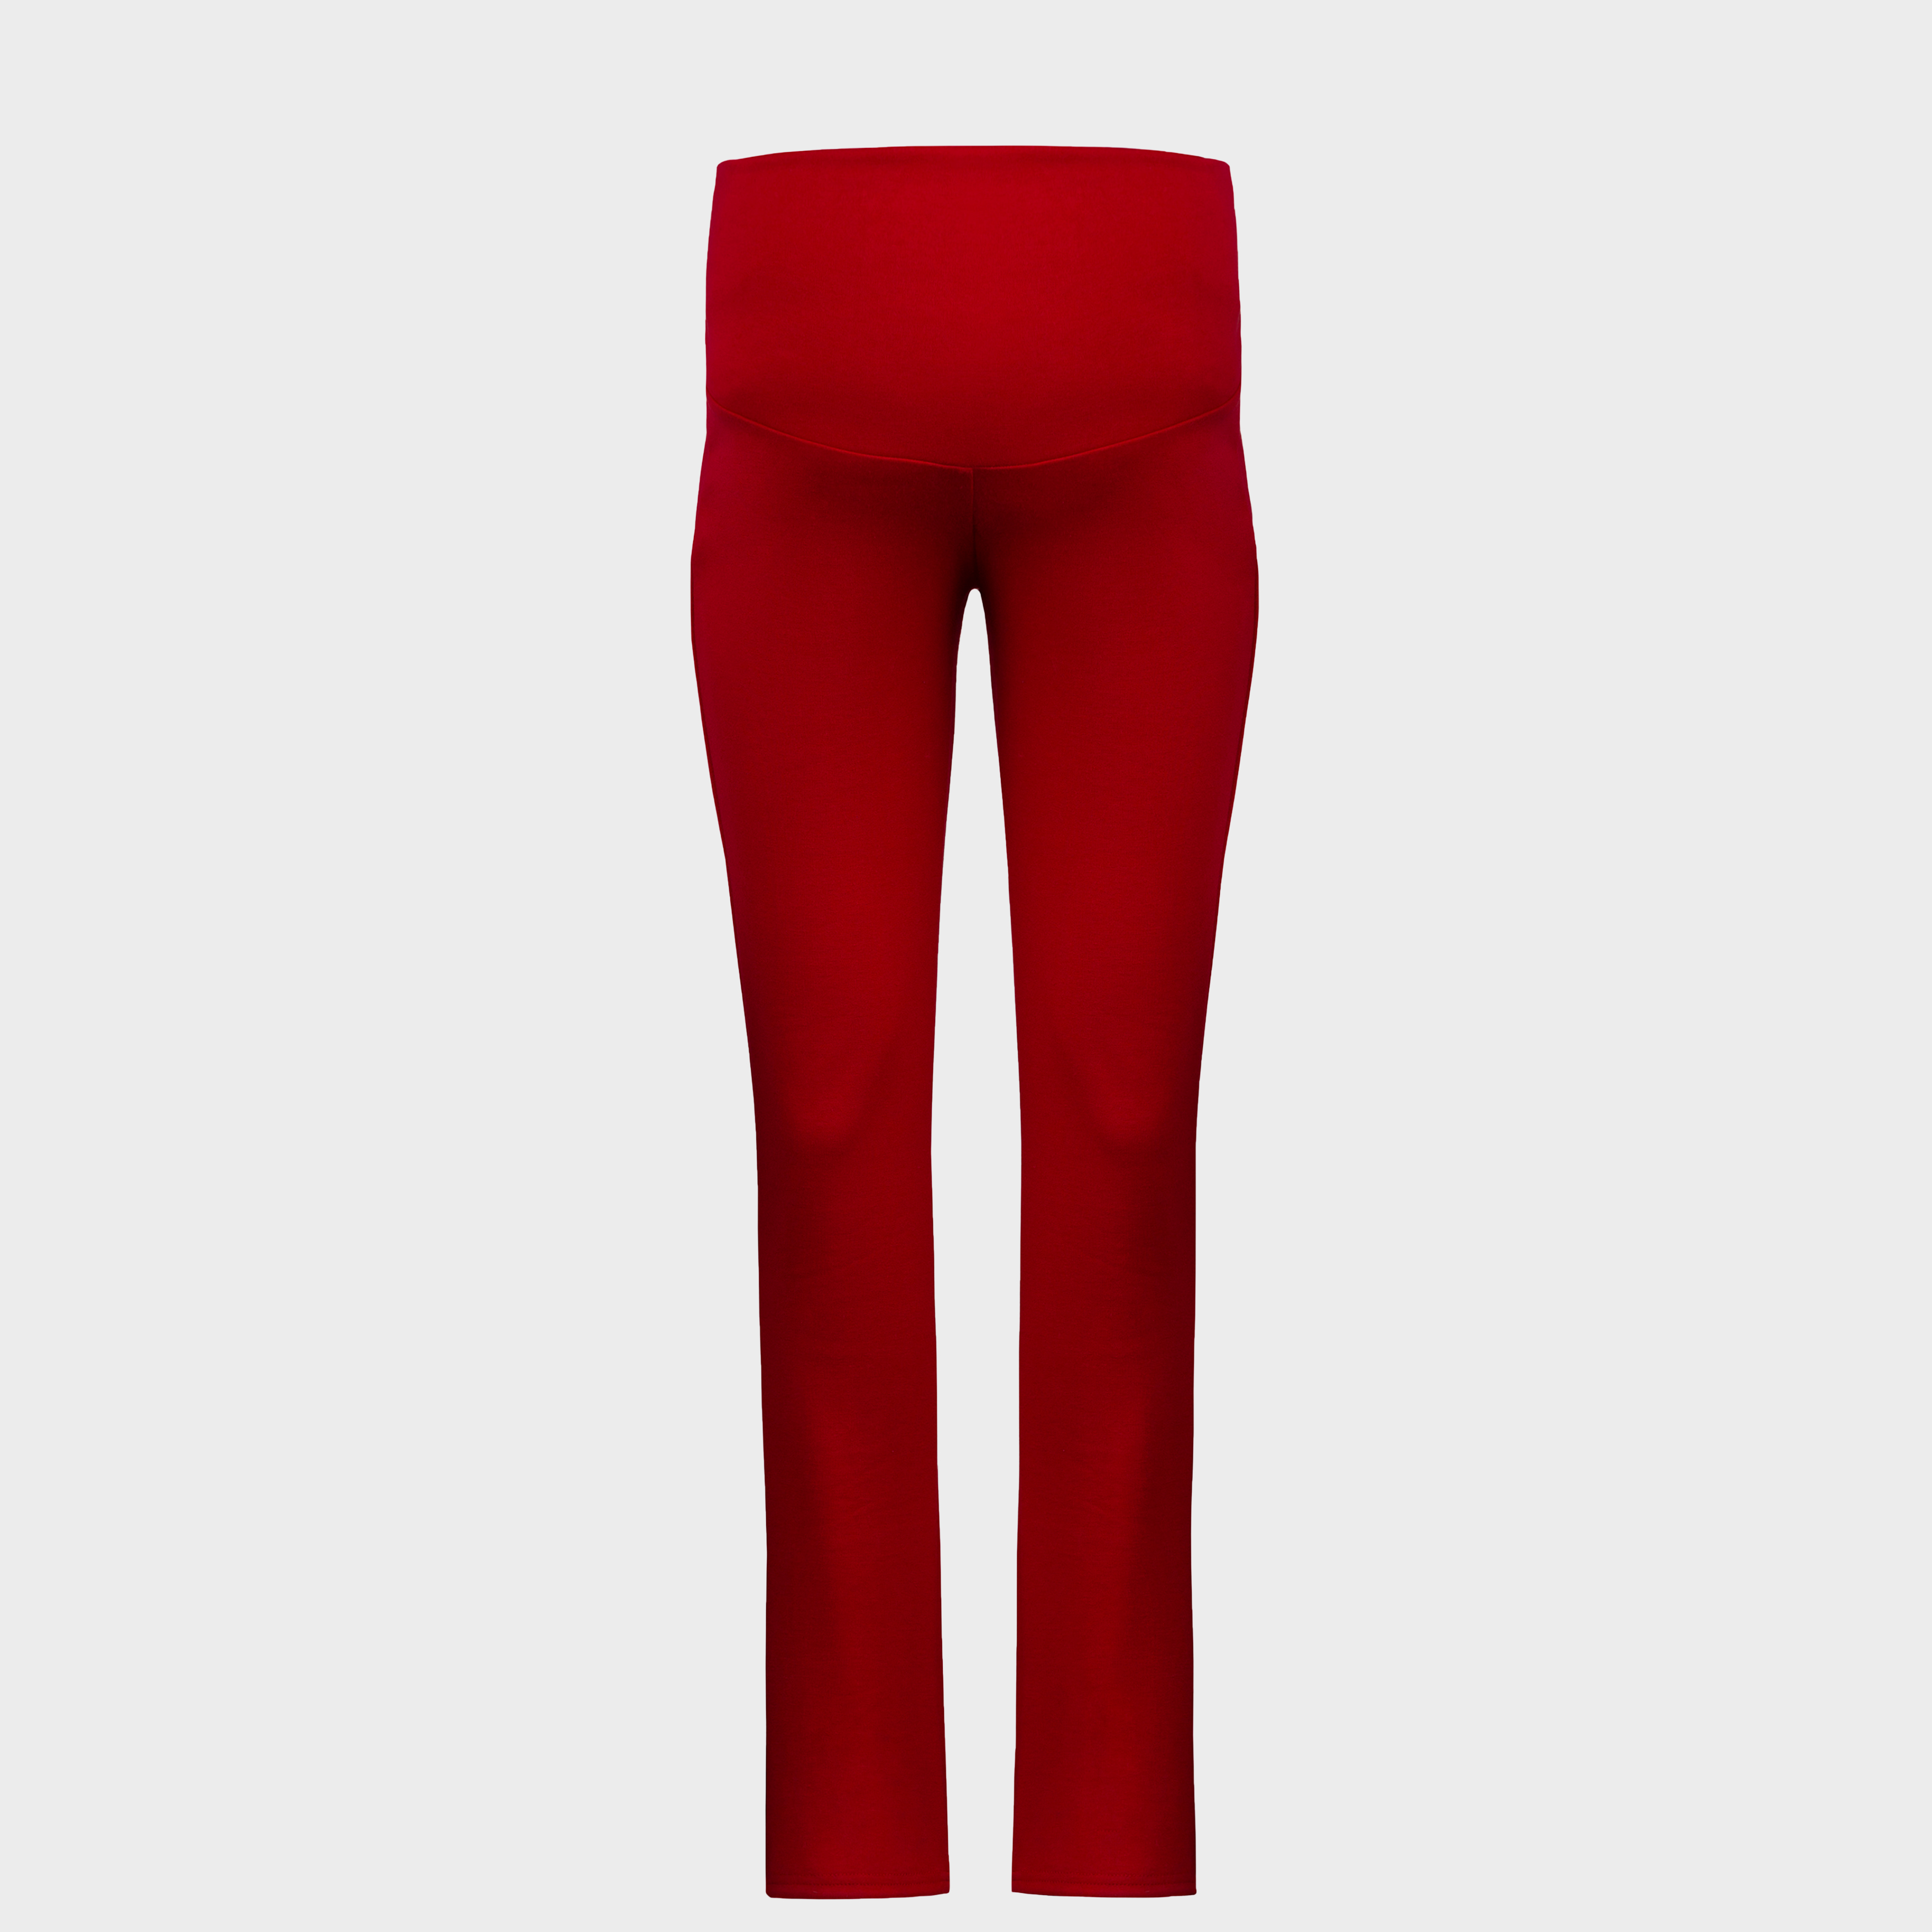 საორსულე წითელი კლასიკური შარვალი (წელვადი) 